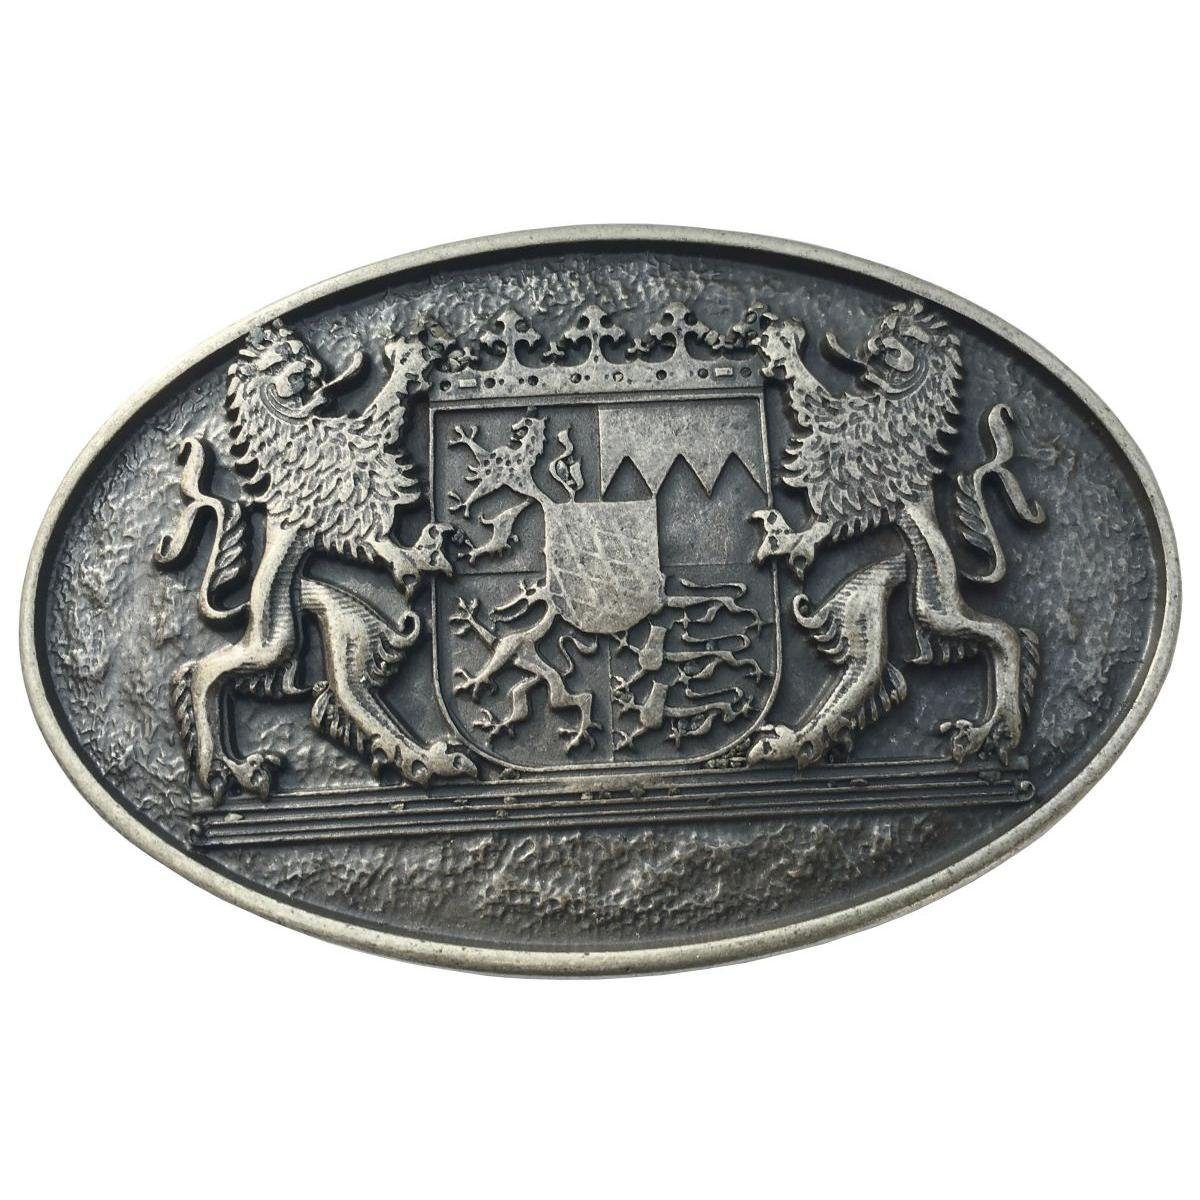 BELTINGER Wechselschließe 4,0 4 mit Gürtelschließe Altsilber Gürtelschnalle Wappen - Doppellöwe Buckle cm